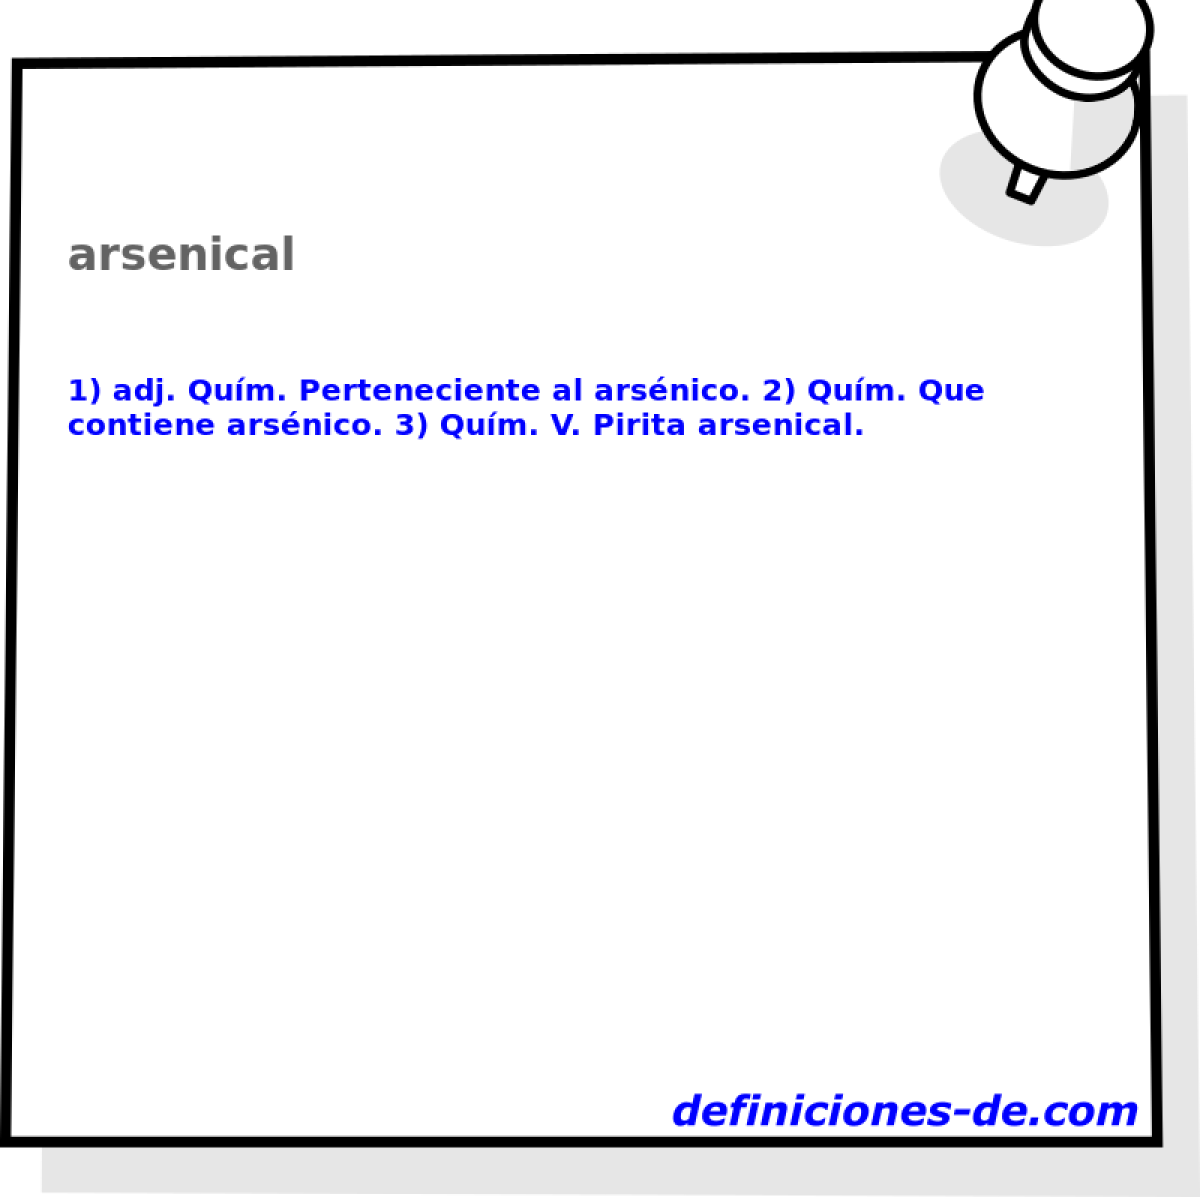 arsenical 